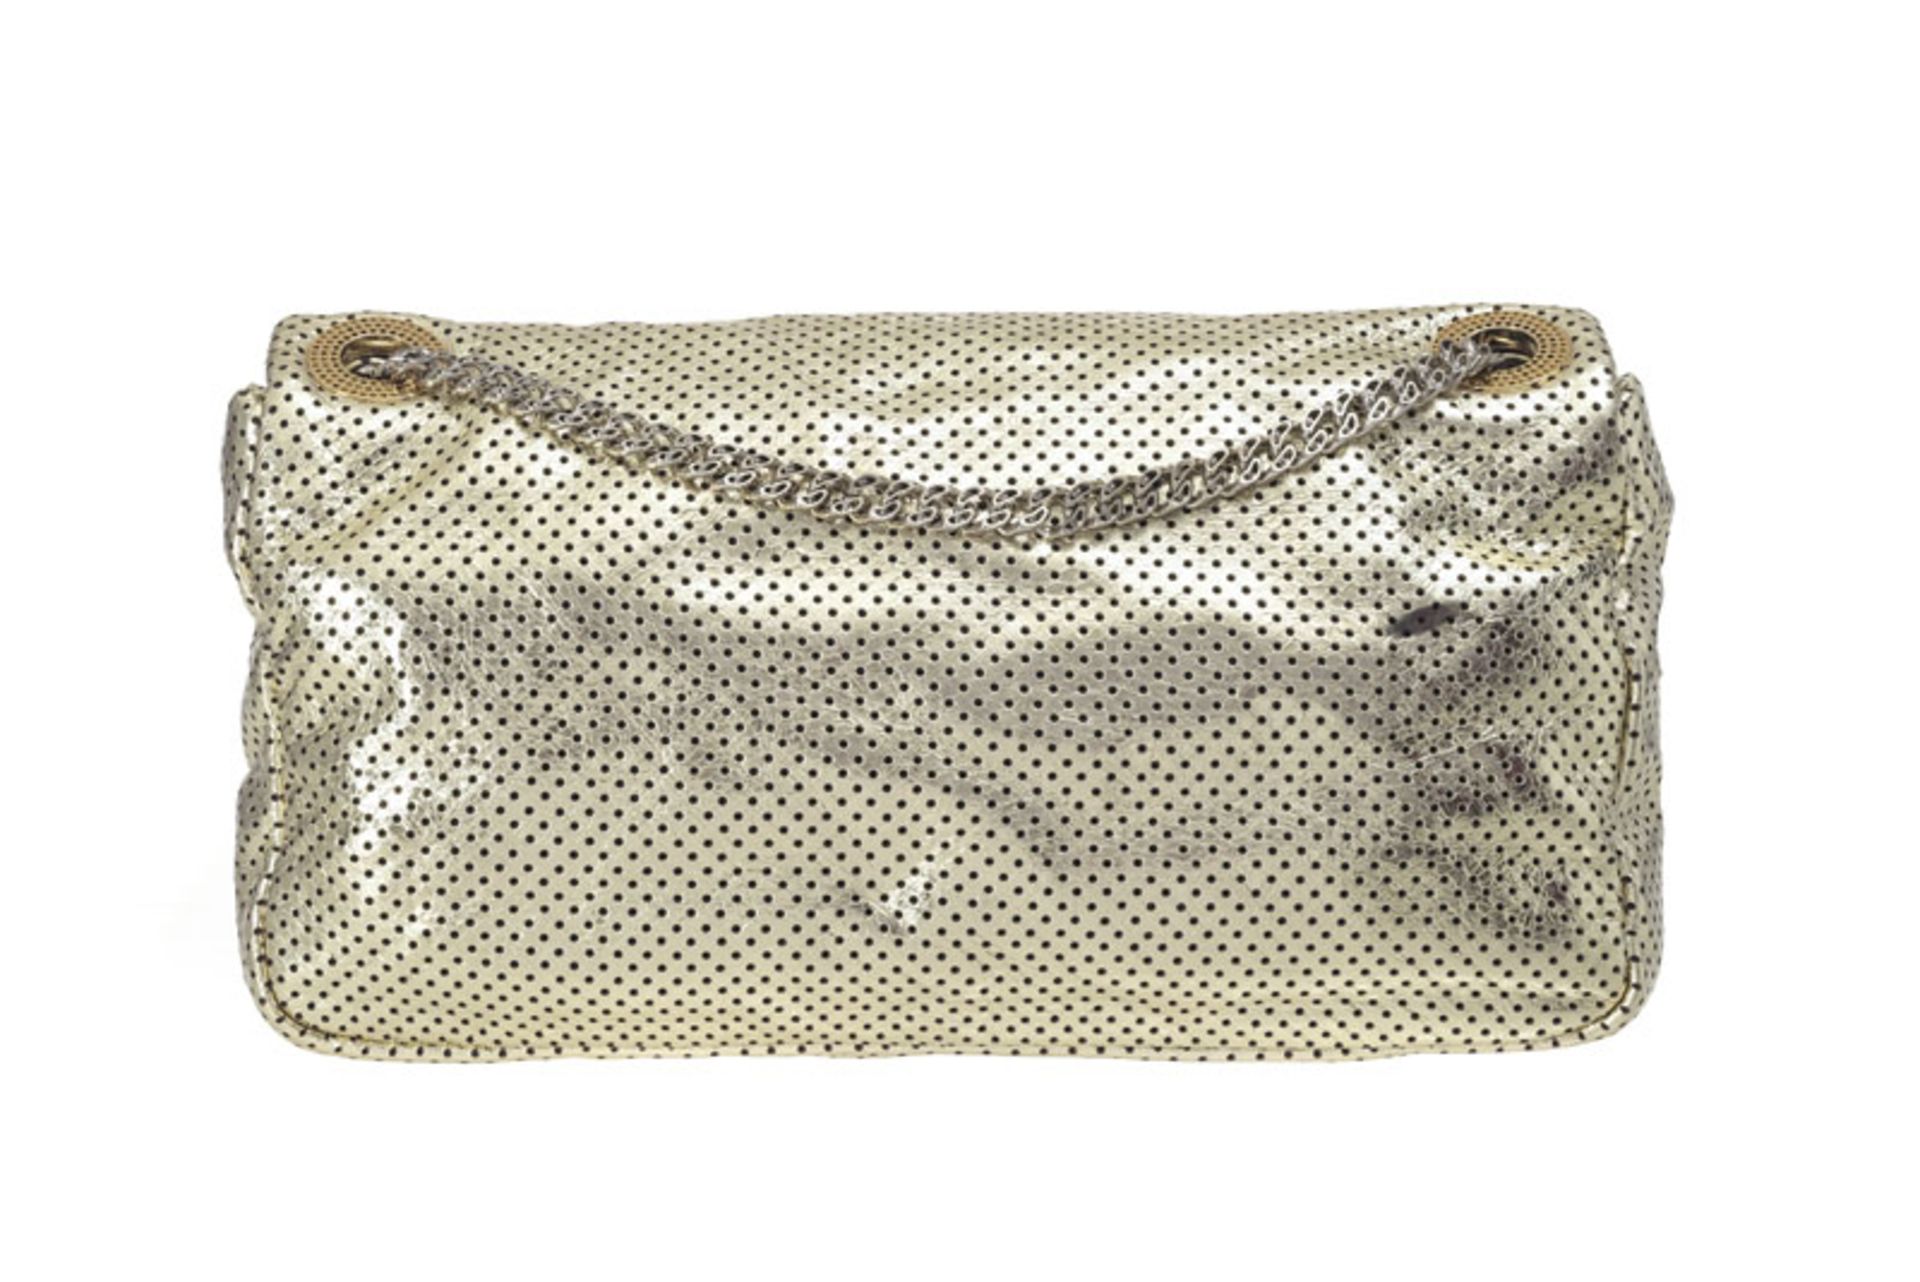 Chanel, sac 2.55 en cuir métallisé or et perforé, année 2009, rabat simple avec bandoulière à chaîne - Image 2 of 3